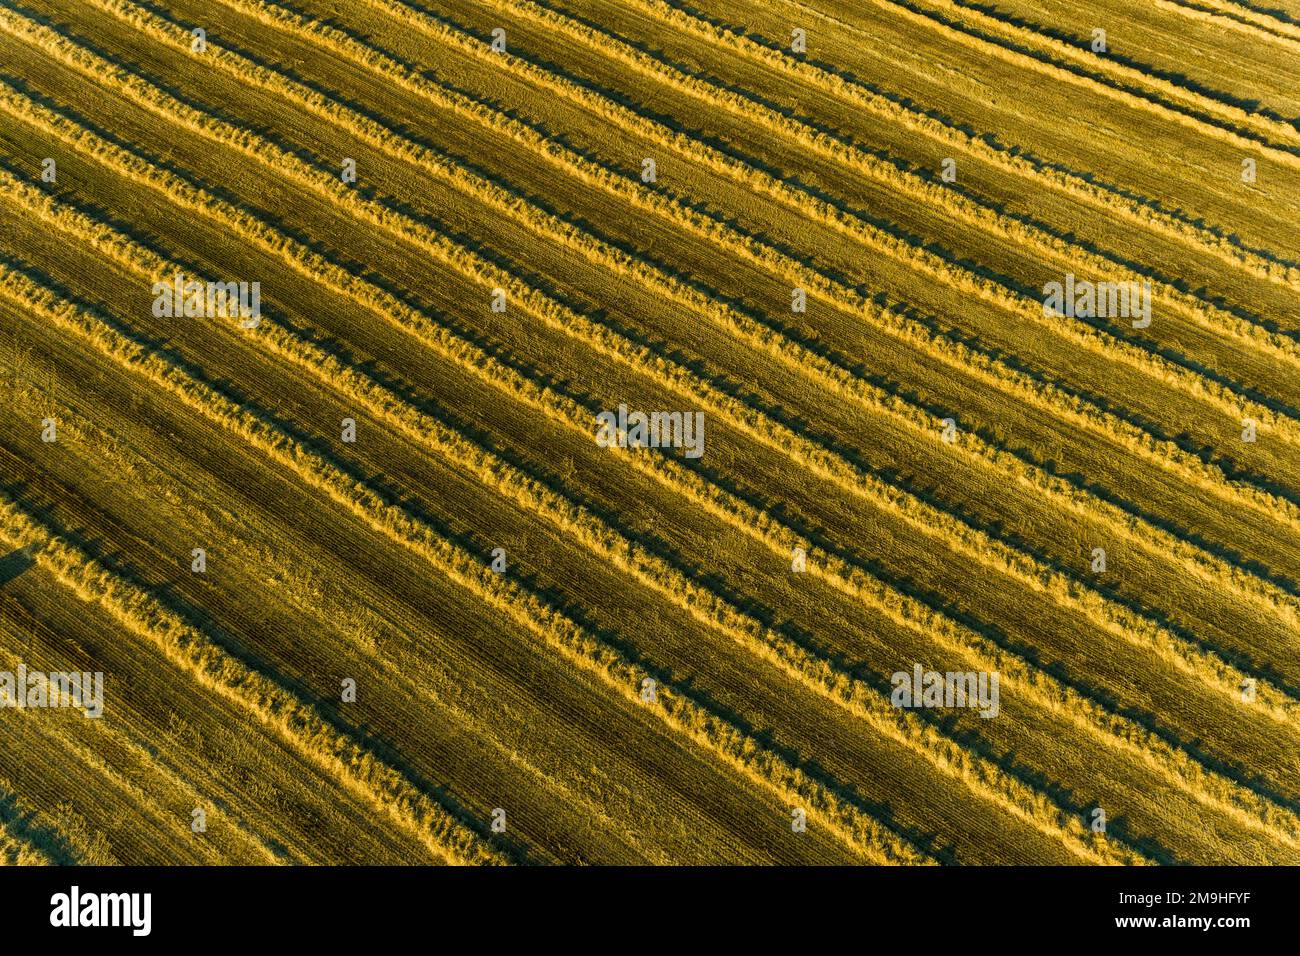 Vue aérienne des rangées de paille de blé avant la mise en balles, Marion County, Illinois, États-Unis Banque D'Images